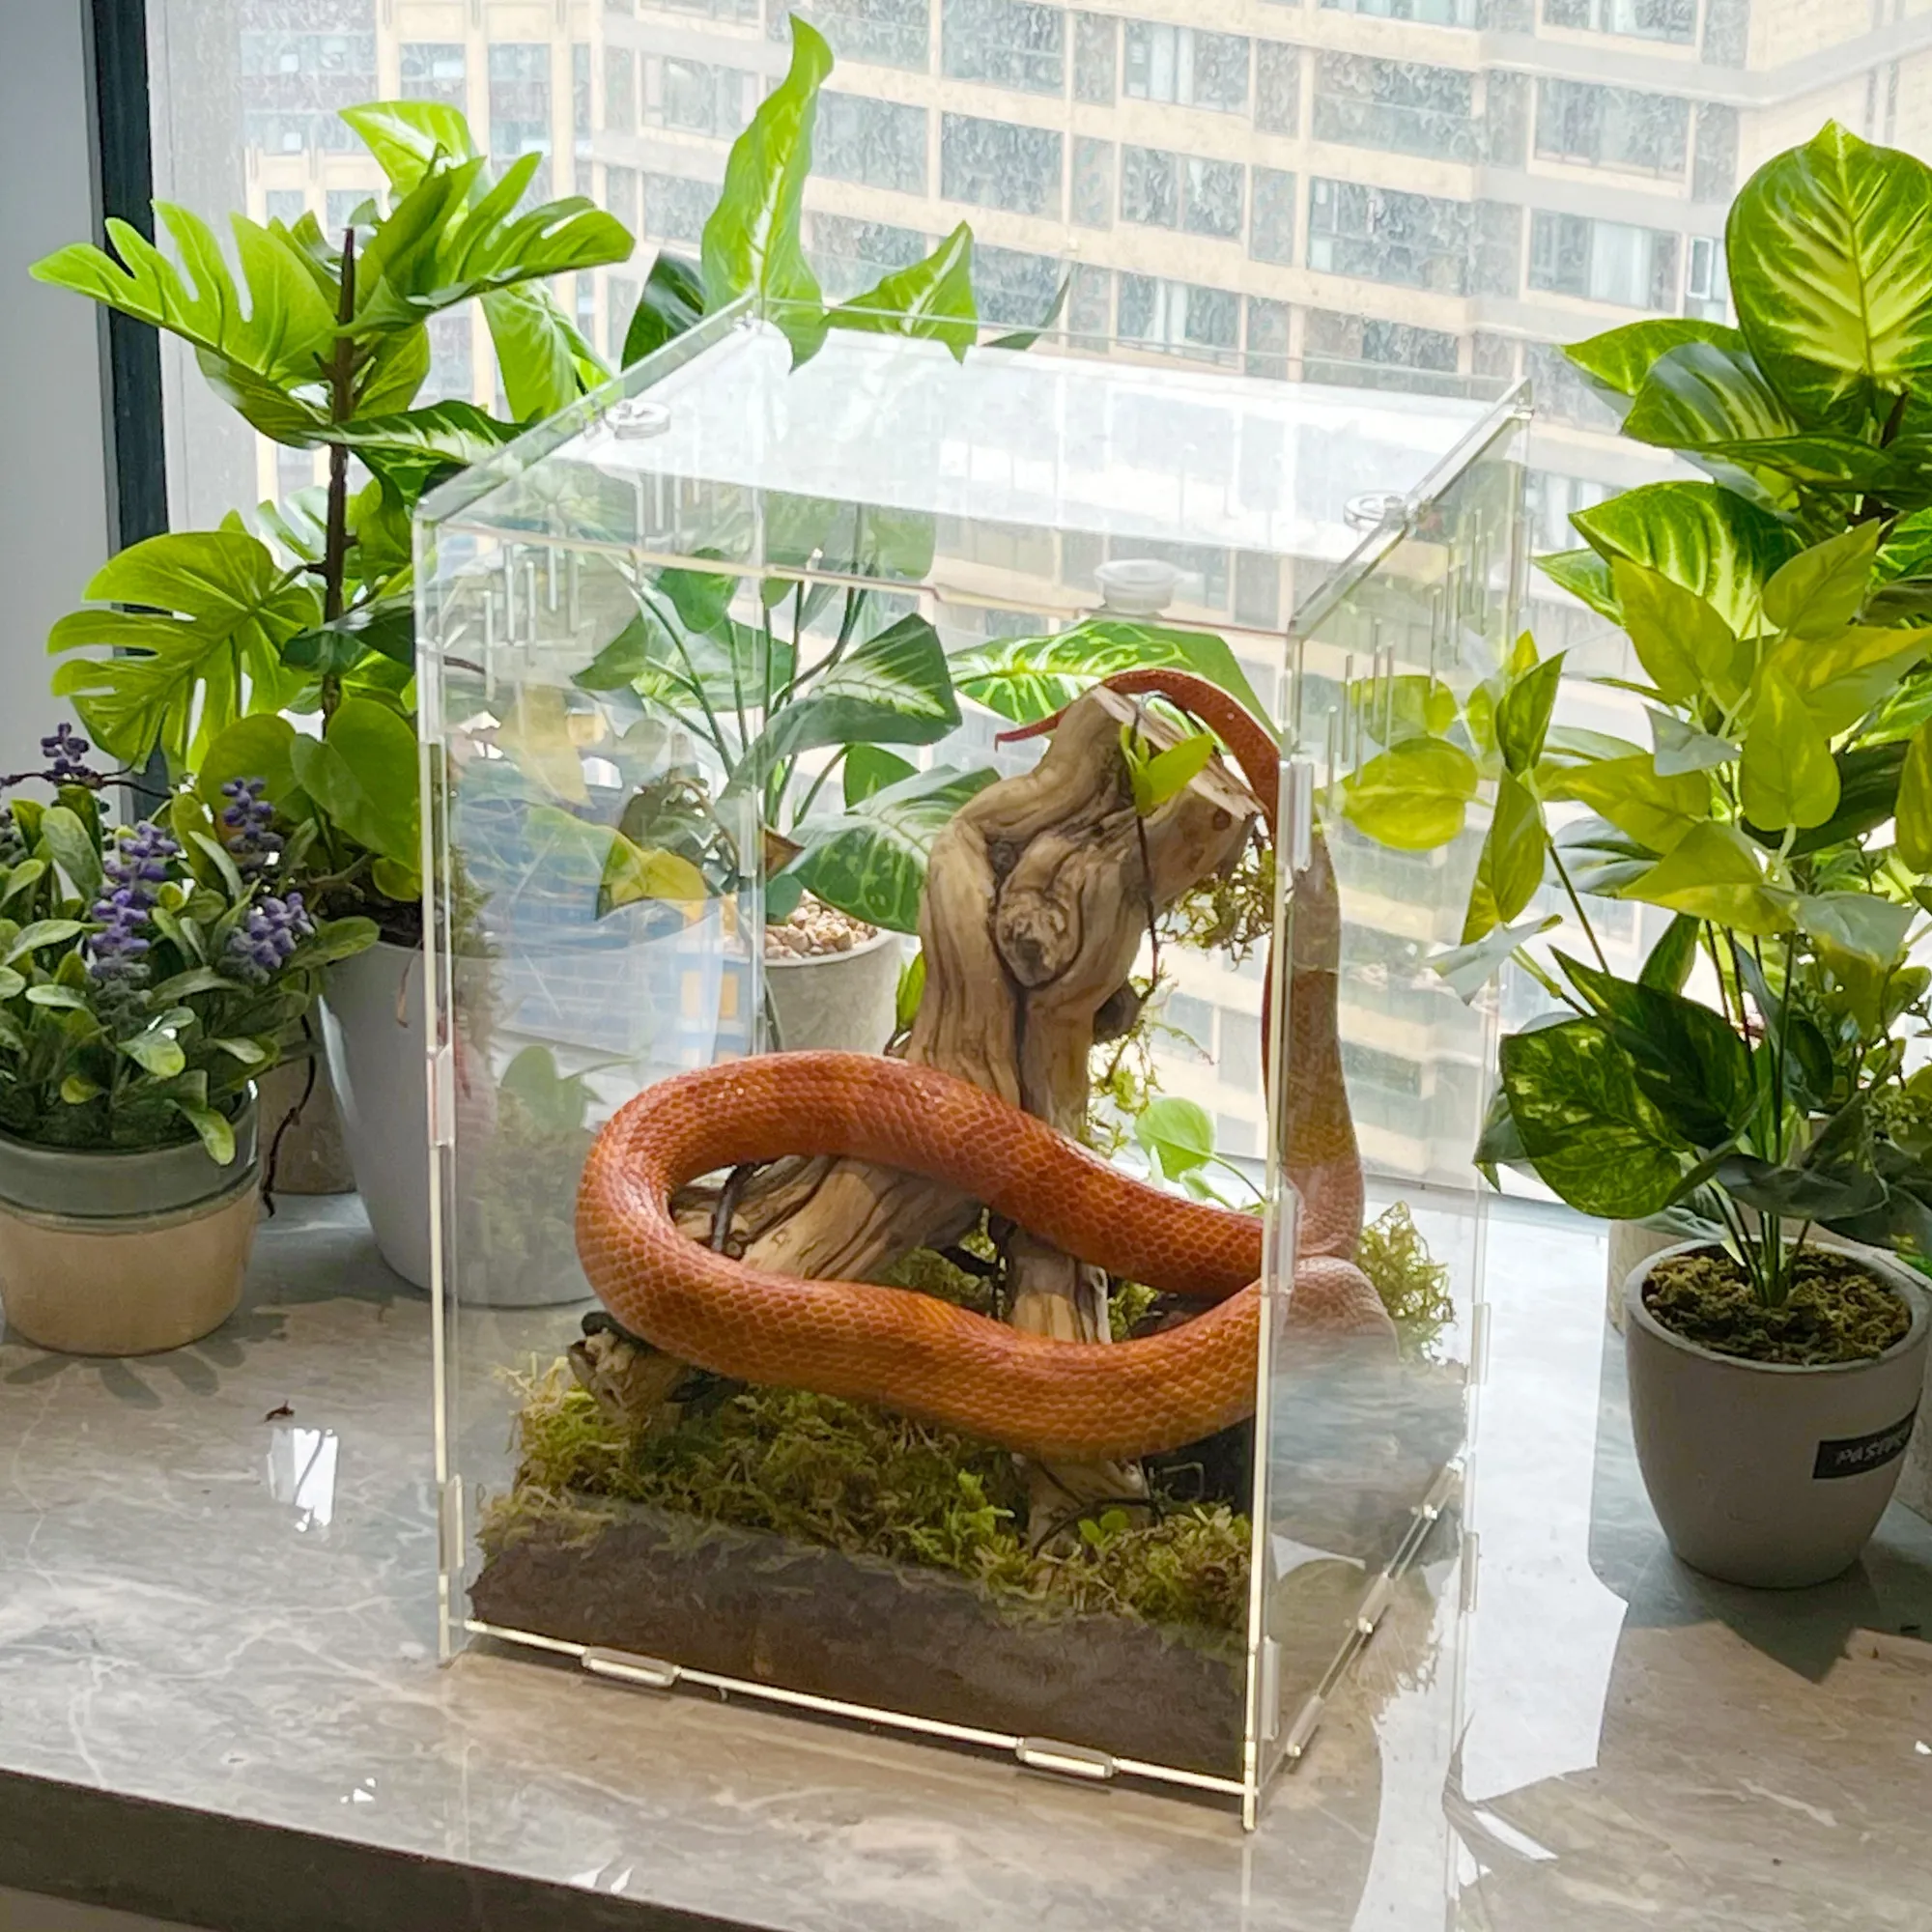 Özel el yapımı akrilik sürüngen pet kutusu kapaklı hayvanlar için rahat bir ortam oluşturur